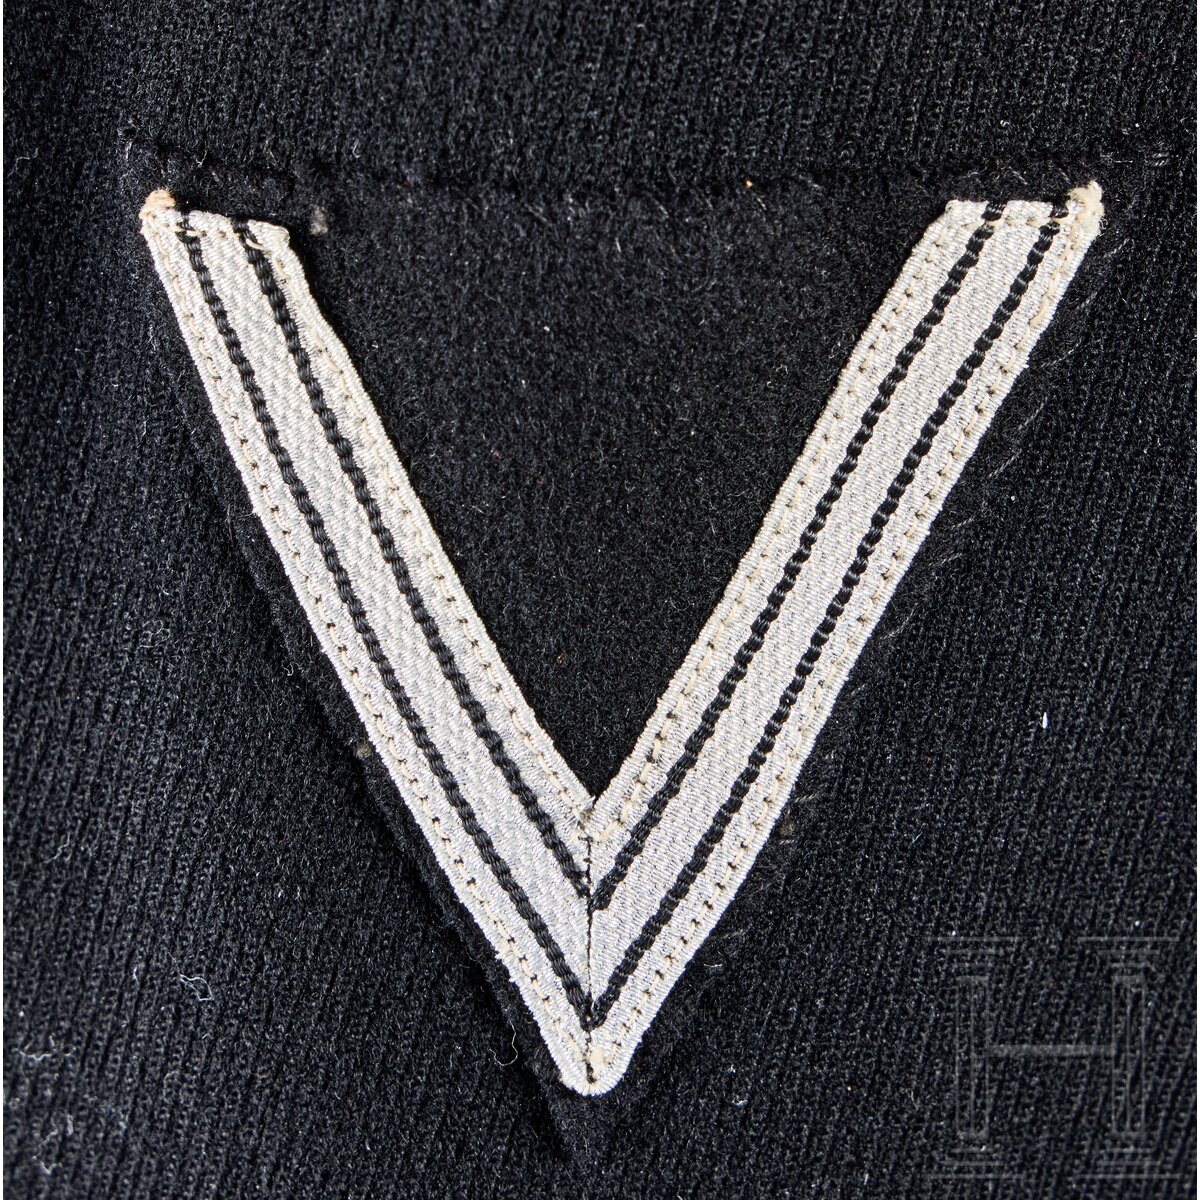 A Service Uniform for a Unterscharführer of Standarte 69 “Hagen/Westfalen” - Image 16 of 18